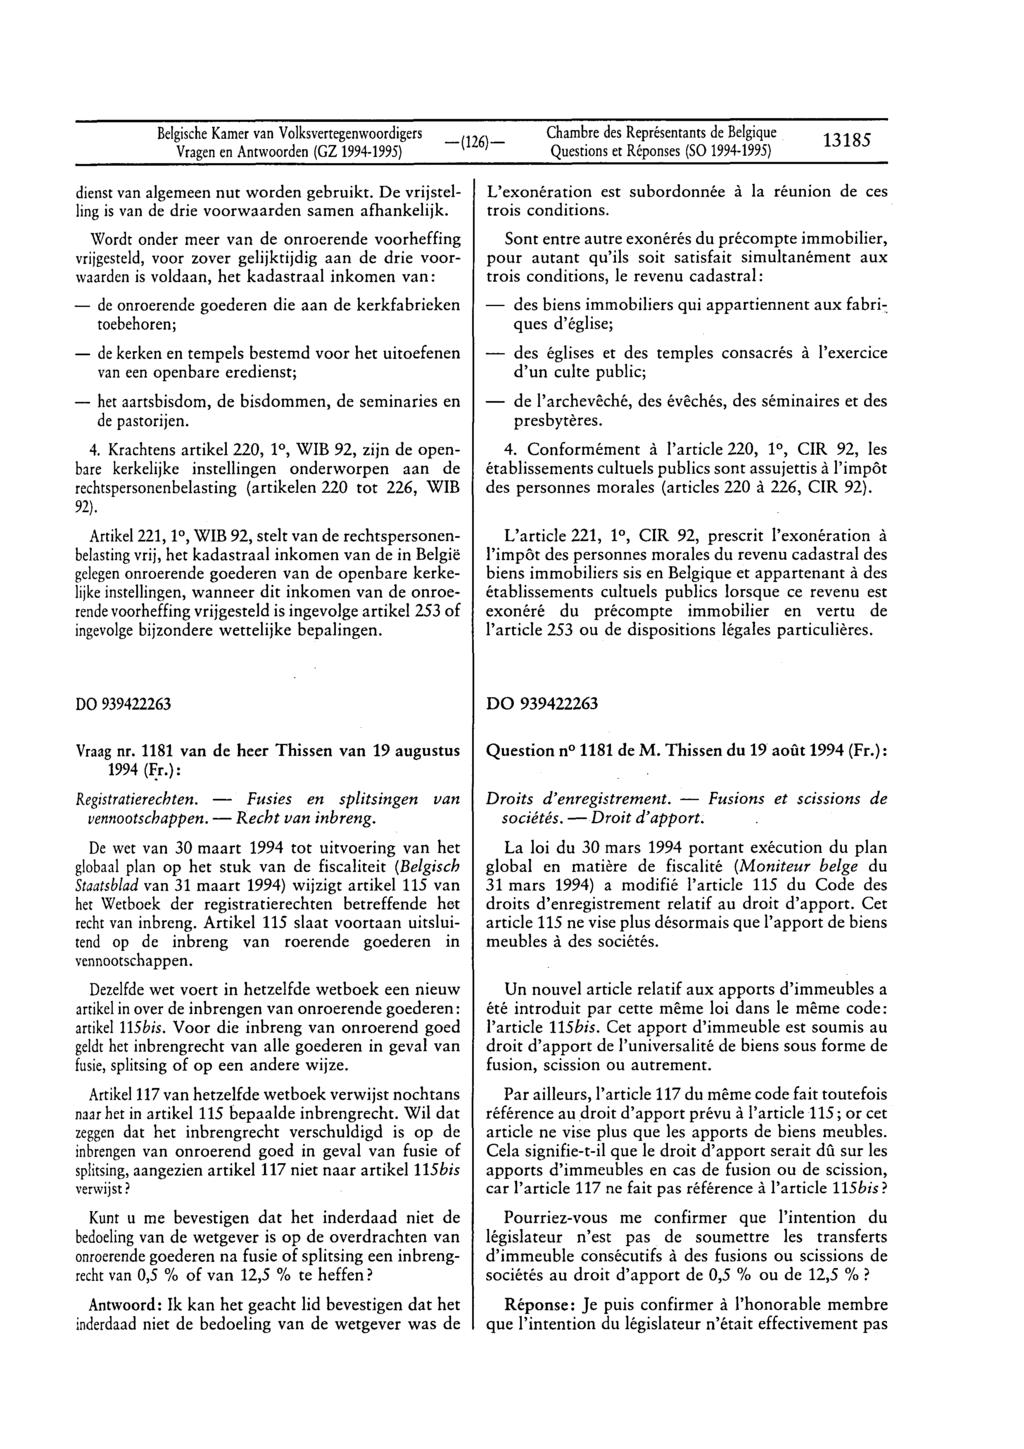 BelgischeKamervan Volksvertegenwoordigers Questionset Réponses(SO 1994-1995) 13185 dienst van algemeen nut worden gebruikt. De vrijstelling is van de drie voorwaarden samen afhankelijk.